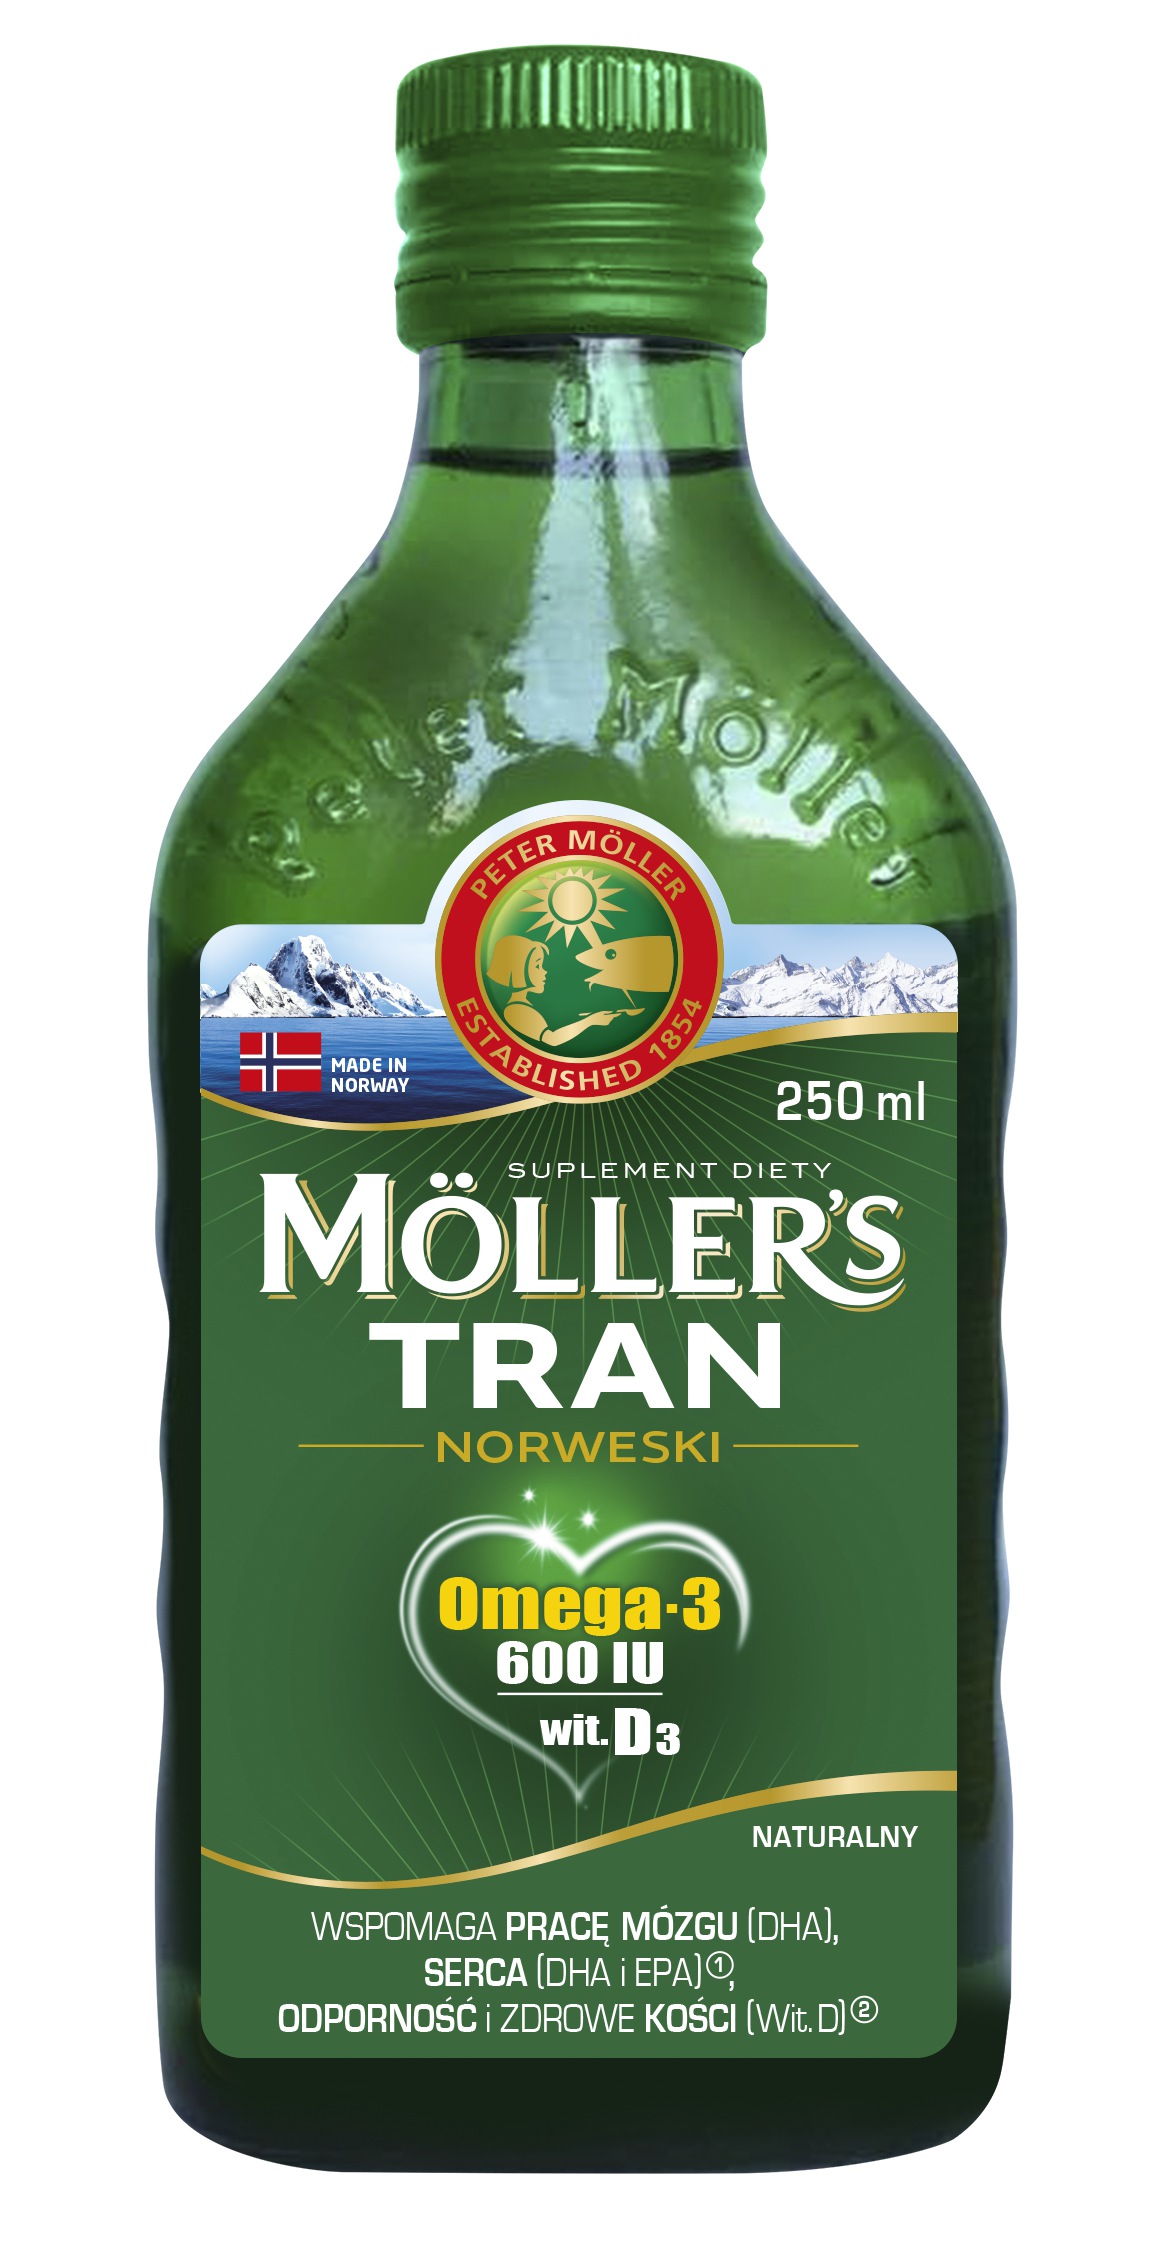 Promocja Mollers Tran Norweski Naturalny 250 ml wyprzedaż przecena